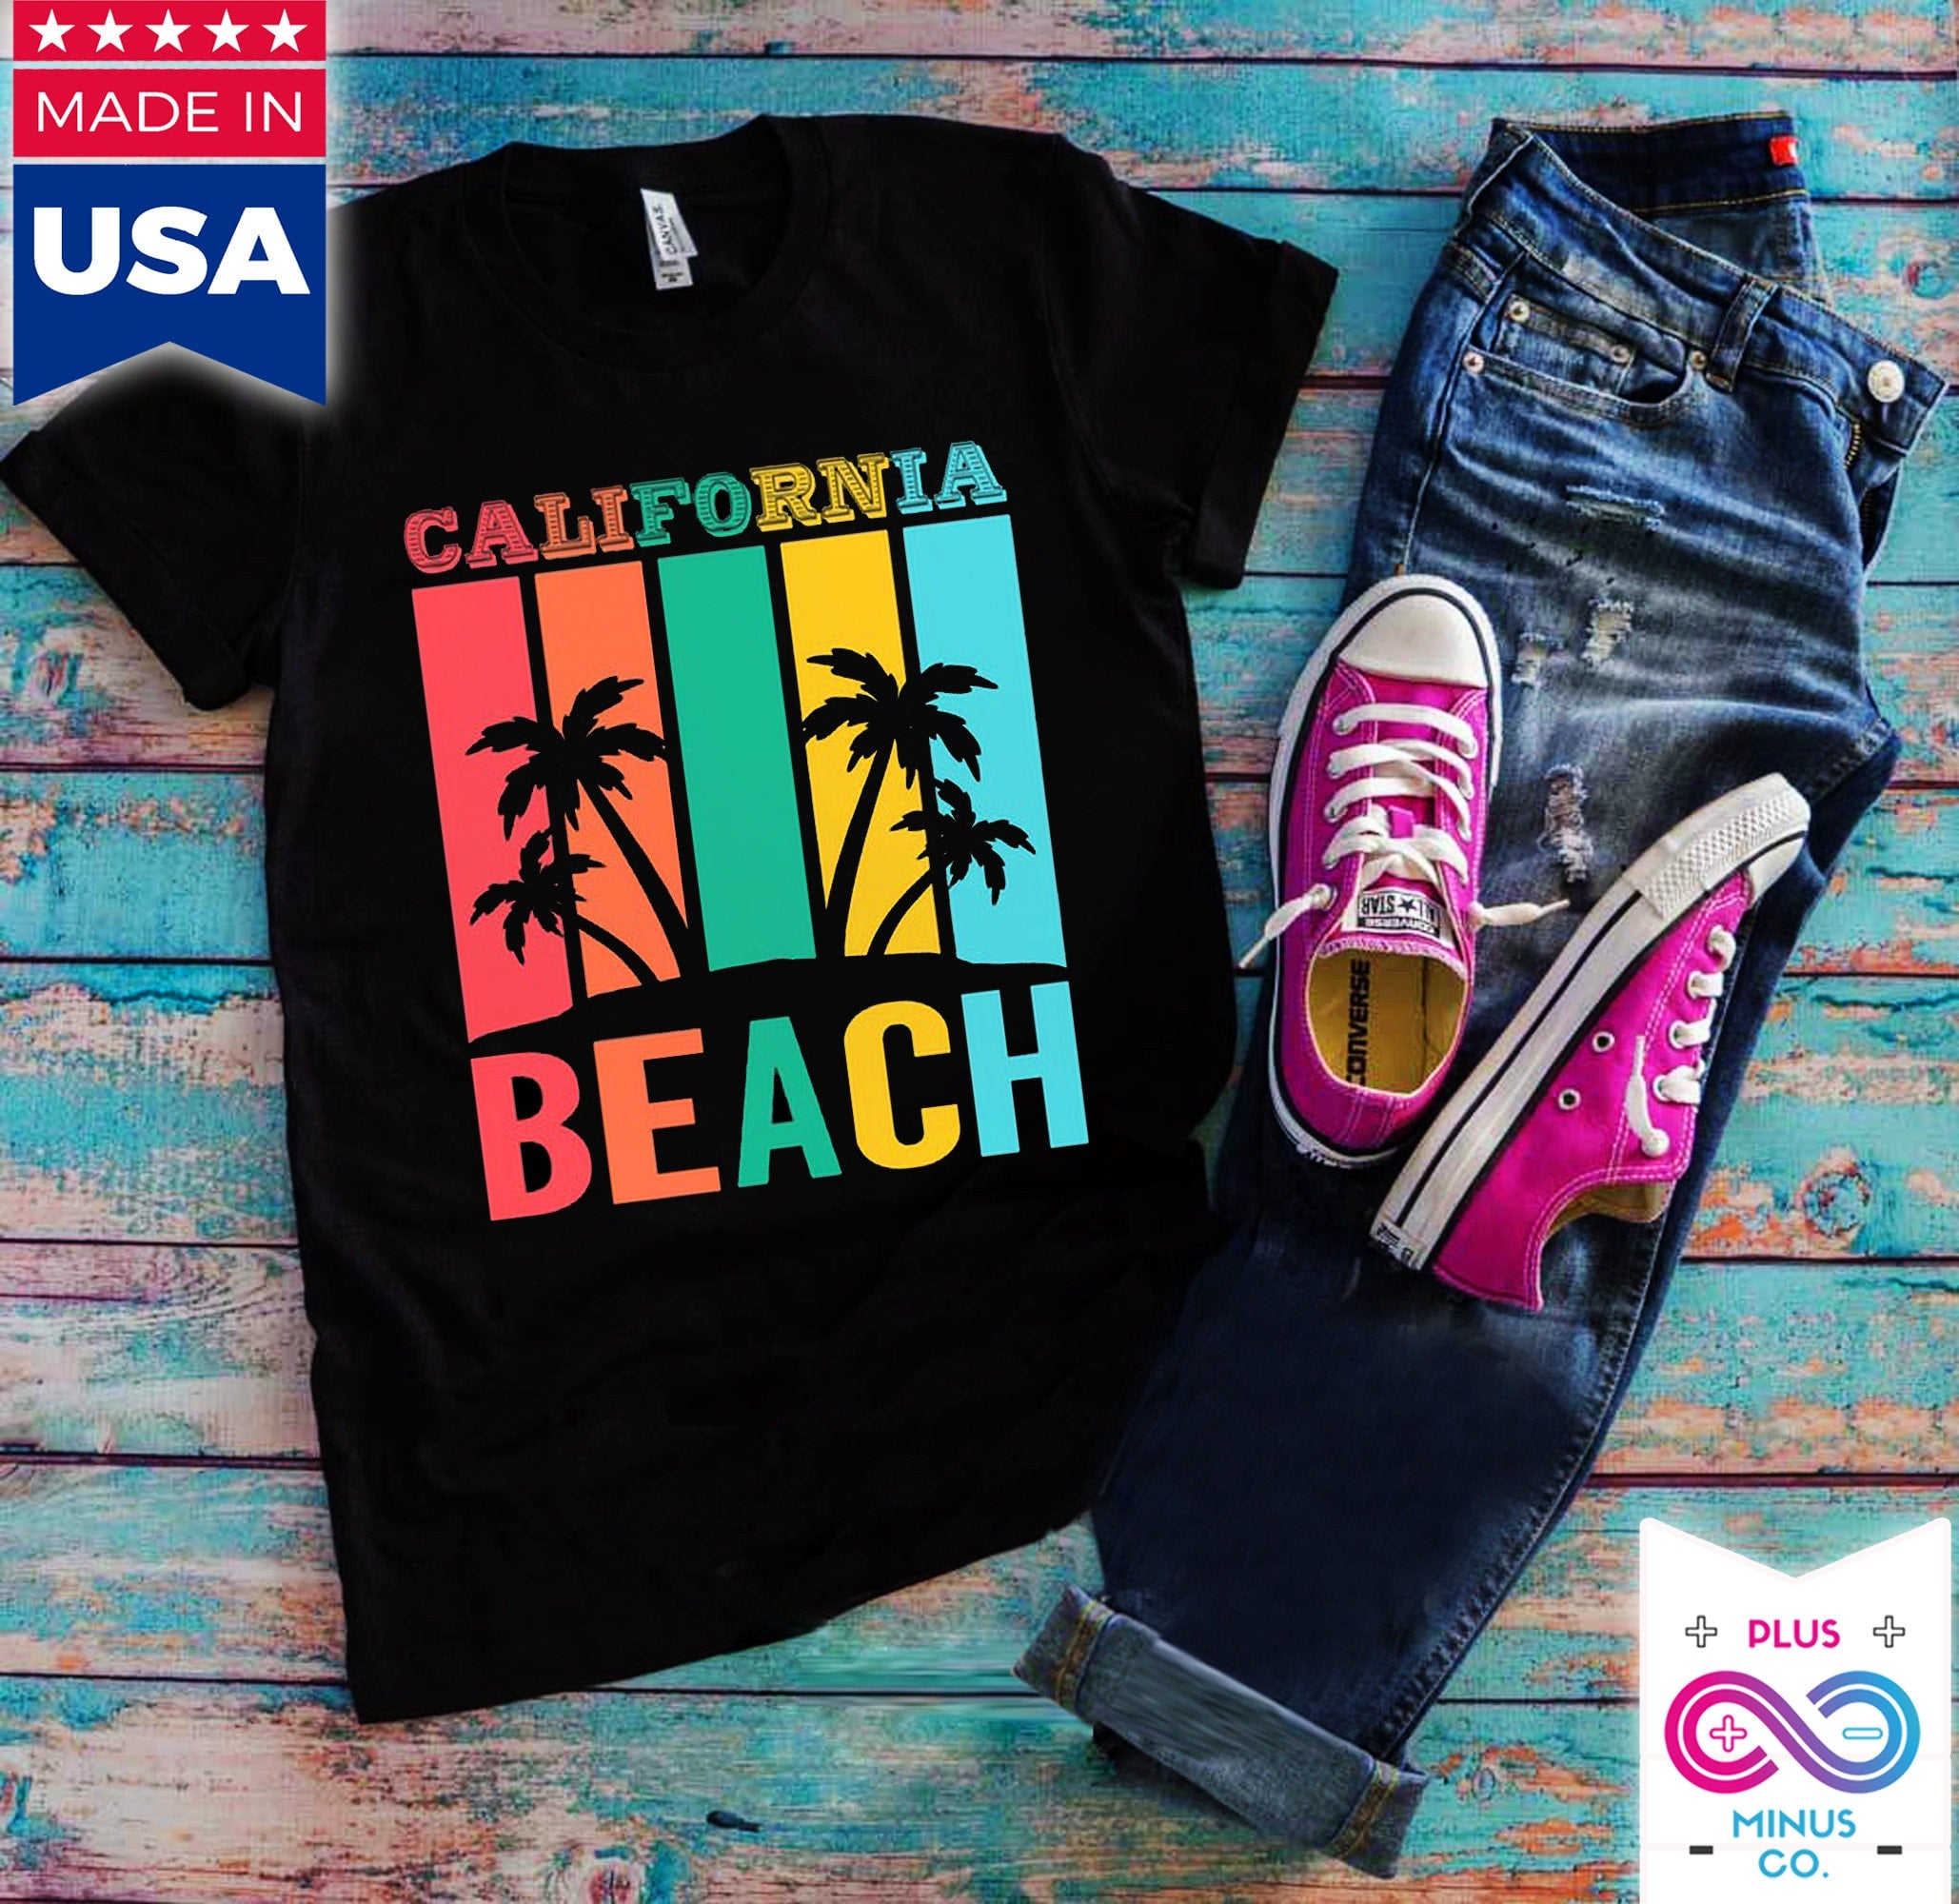 캘리포니아 해변 | 복고풍 티셔츠,아일랜드 라이프 티셔츠 | 여름 셔츠 | 휴가용 셔츠 - plusminusco.com